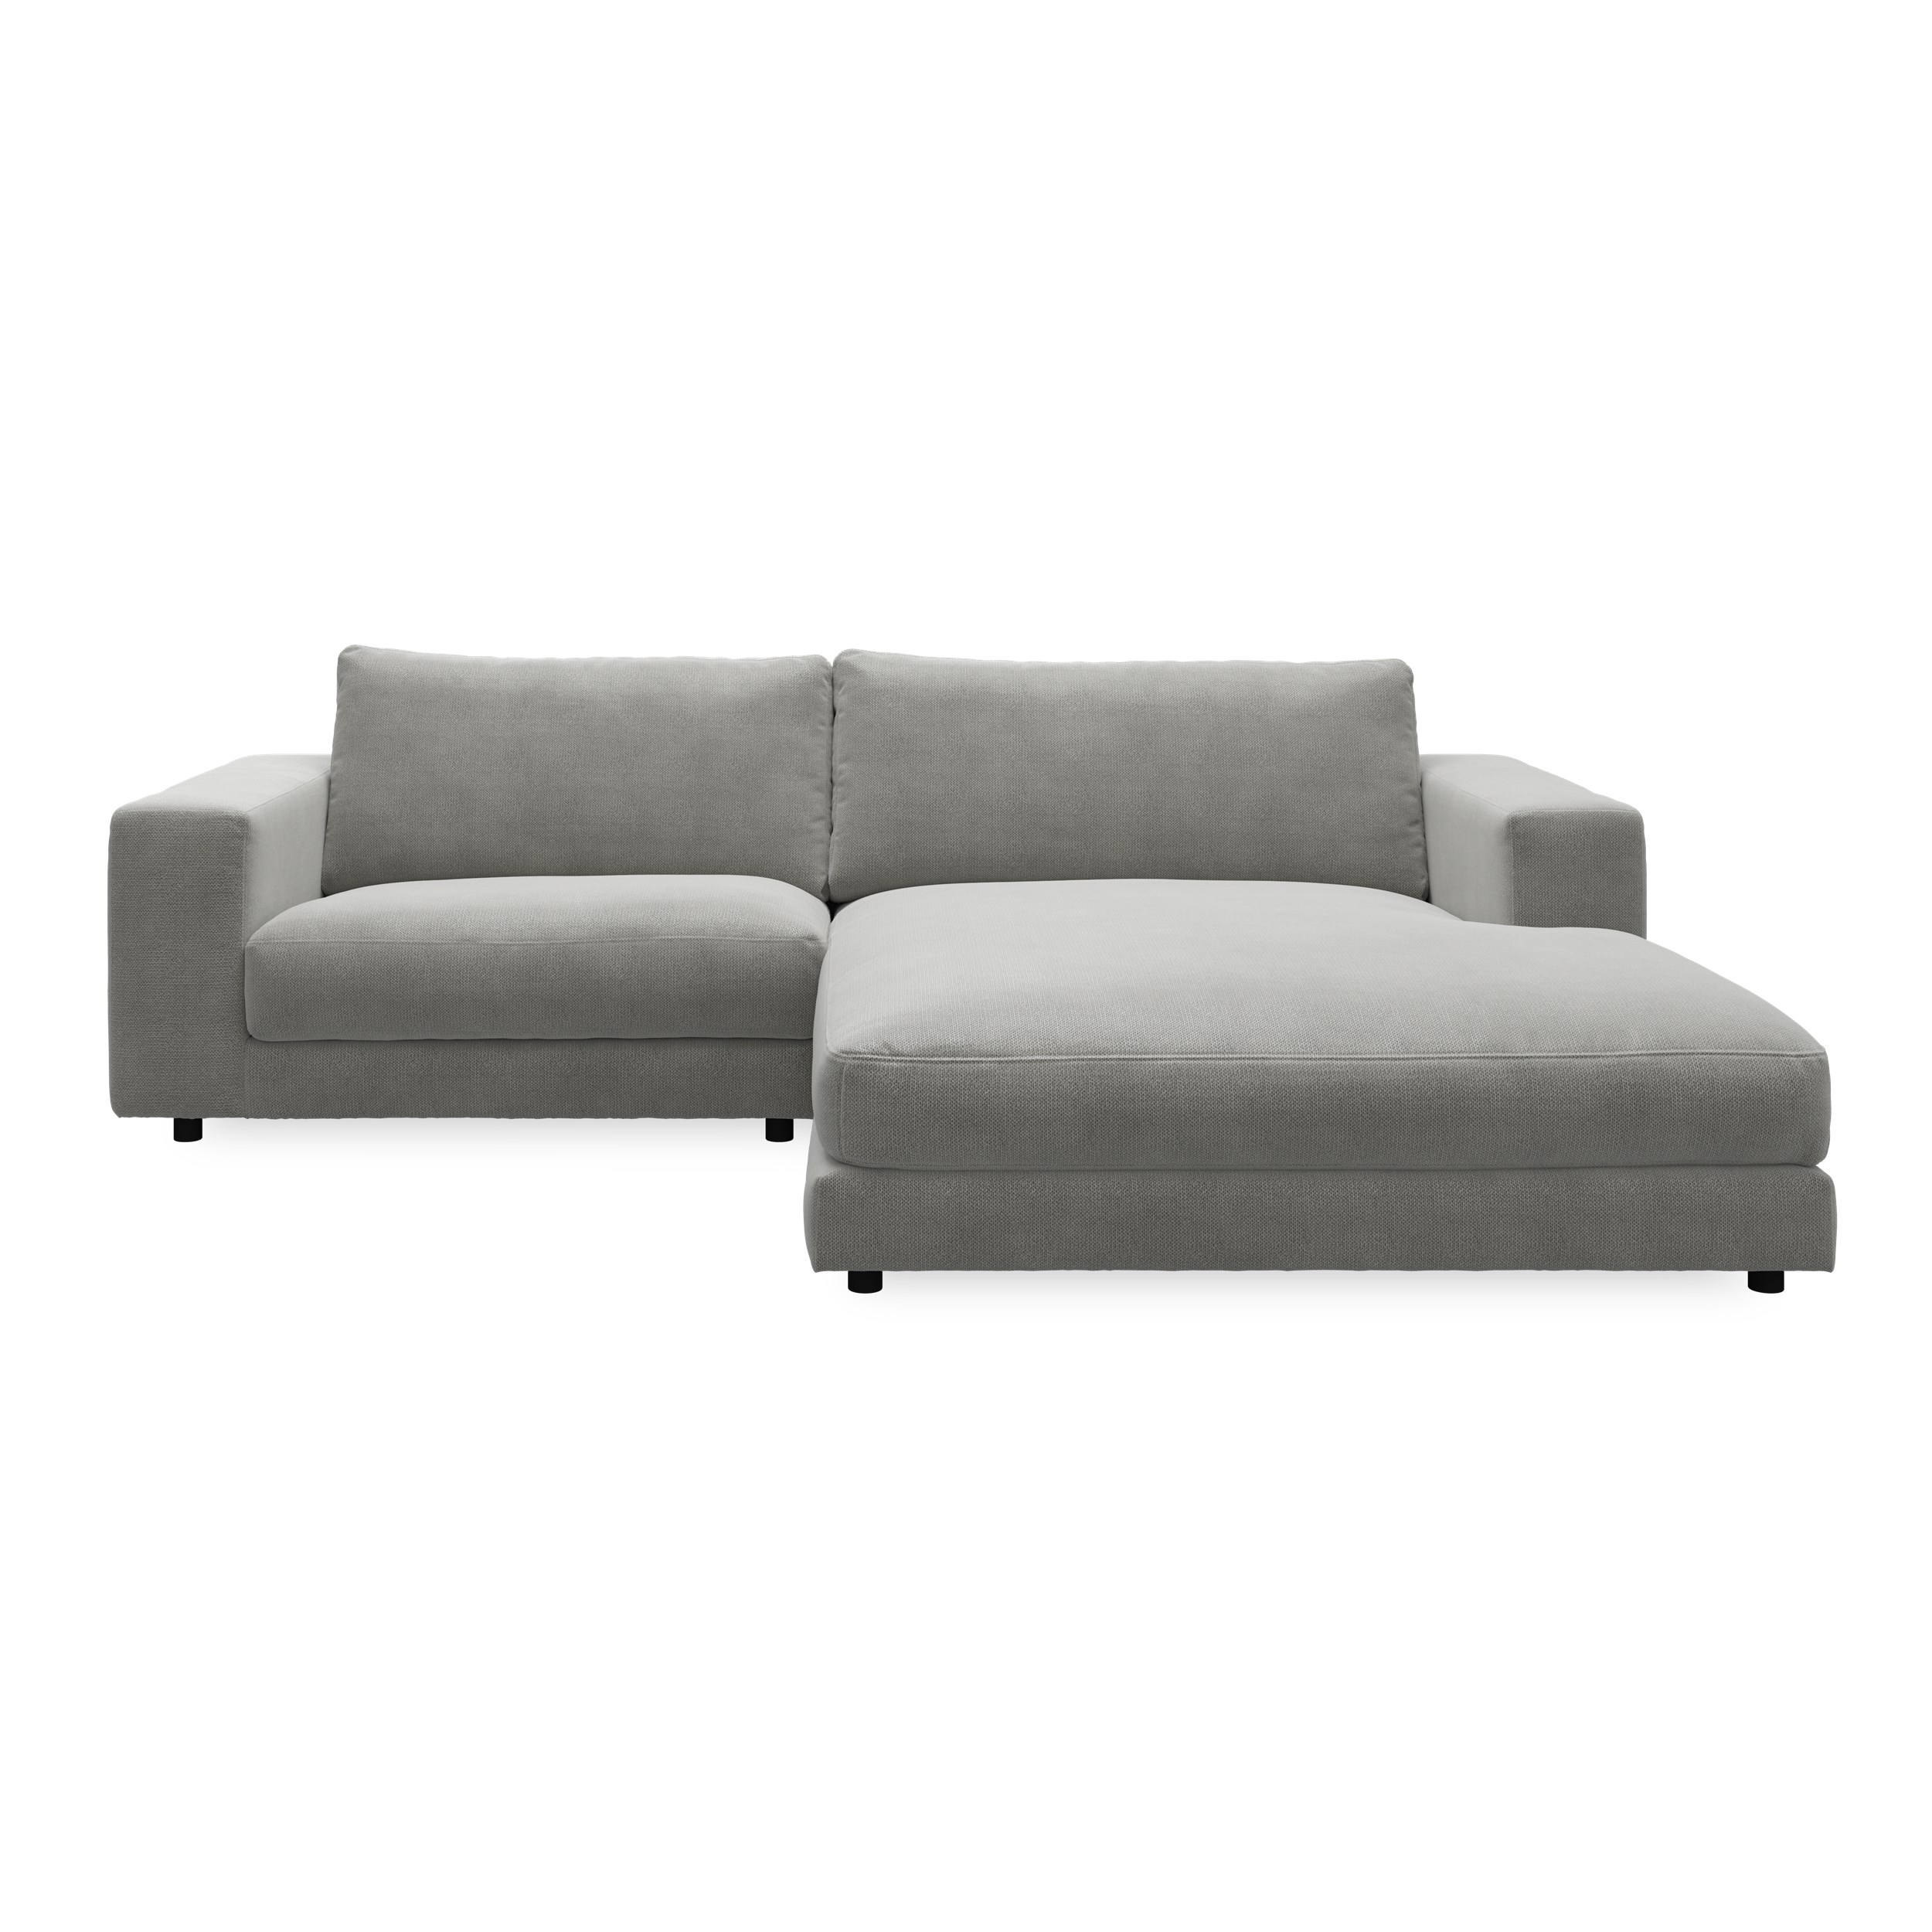 Bennent högervänd soffa med schäslong - Picasso Anthrazit klädsel, ben i svart plast och S:skum/fib/din/sili R:Dun/skum